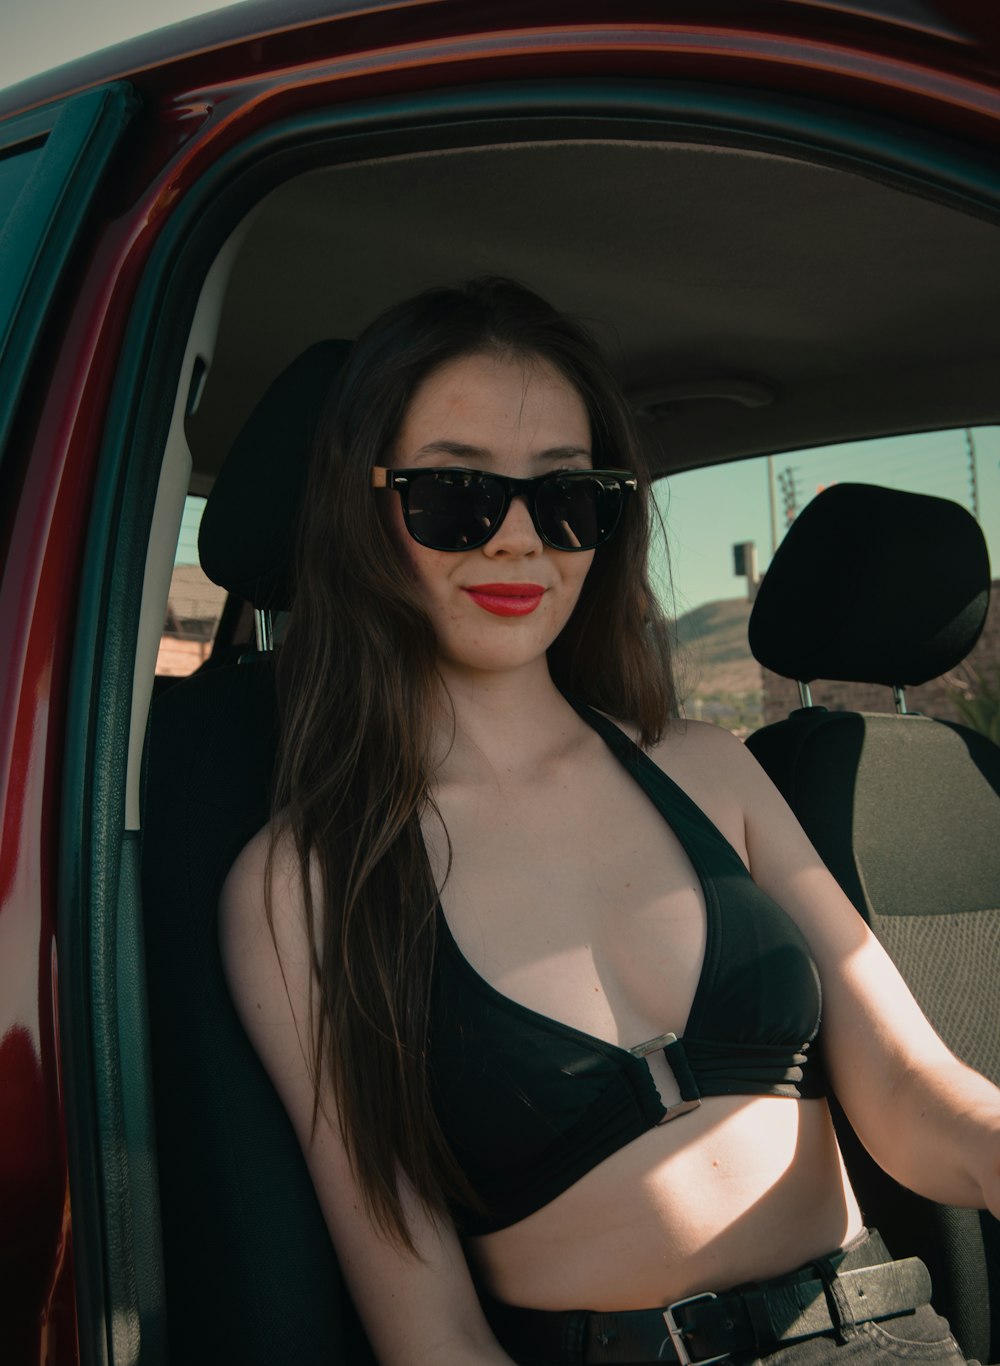 a woman in a bikini sitting in a car